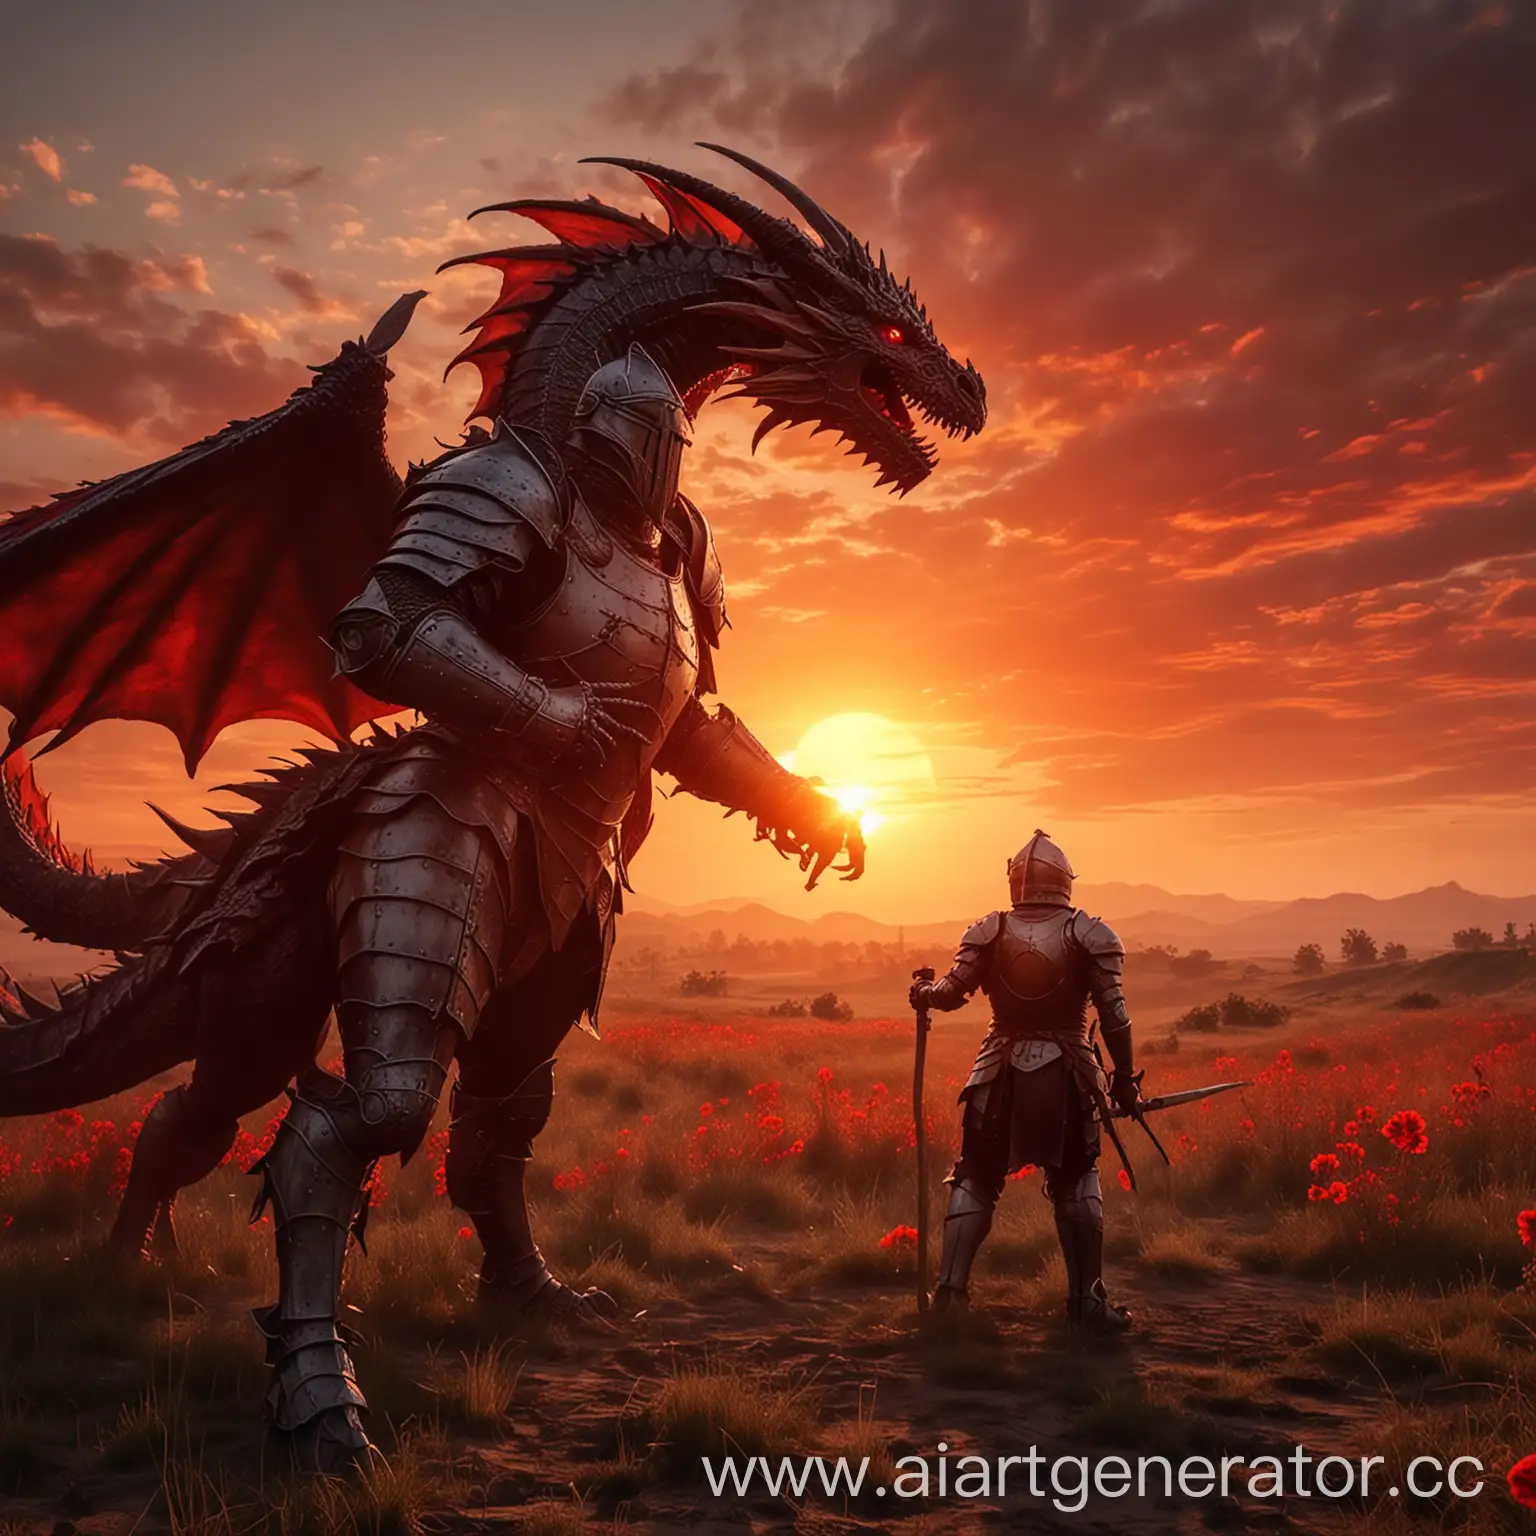 поле, закат, в небе большое красное солнце, стоит рыцарь и дерётся с драконом